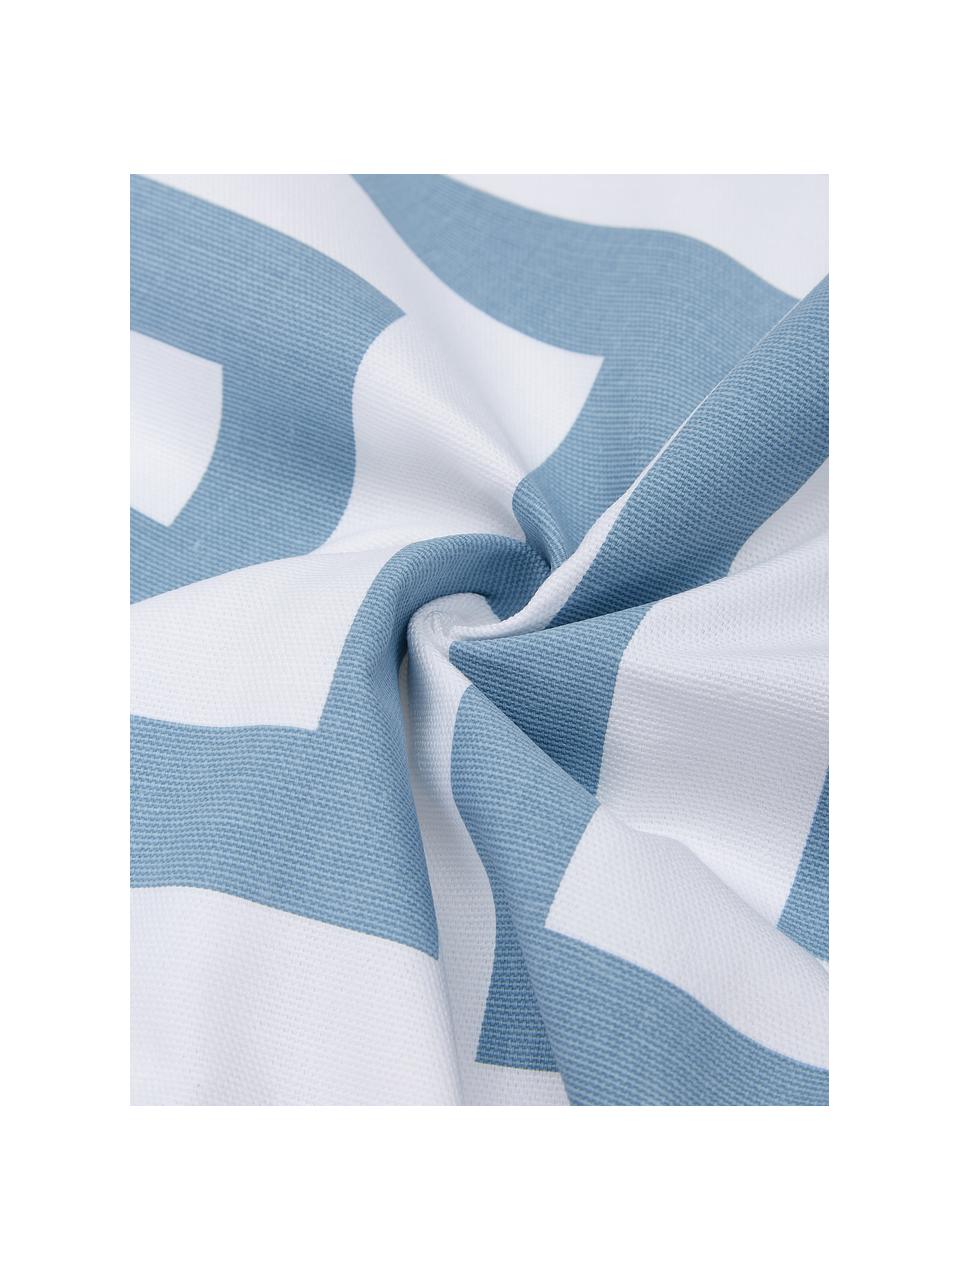 Kissenhülle Bram in Hellblau/Weiß mit grafischem Muster, 100% Baumwolle, Weiß, Hellblau, 45 x 45 cm